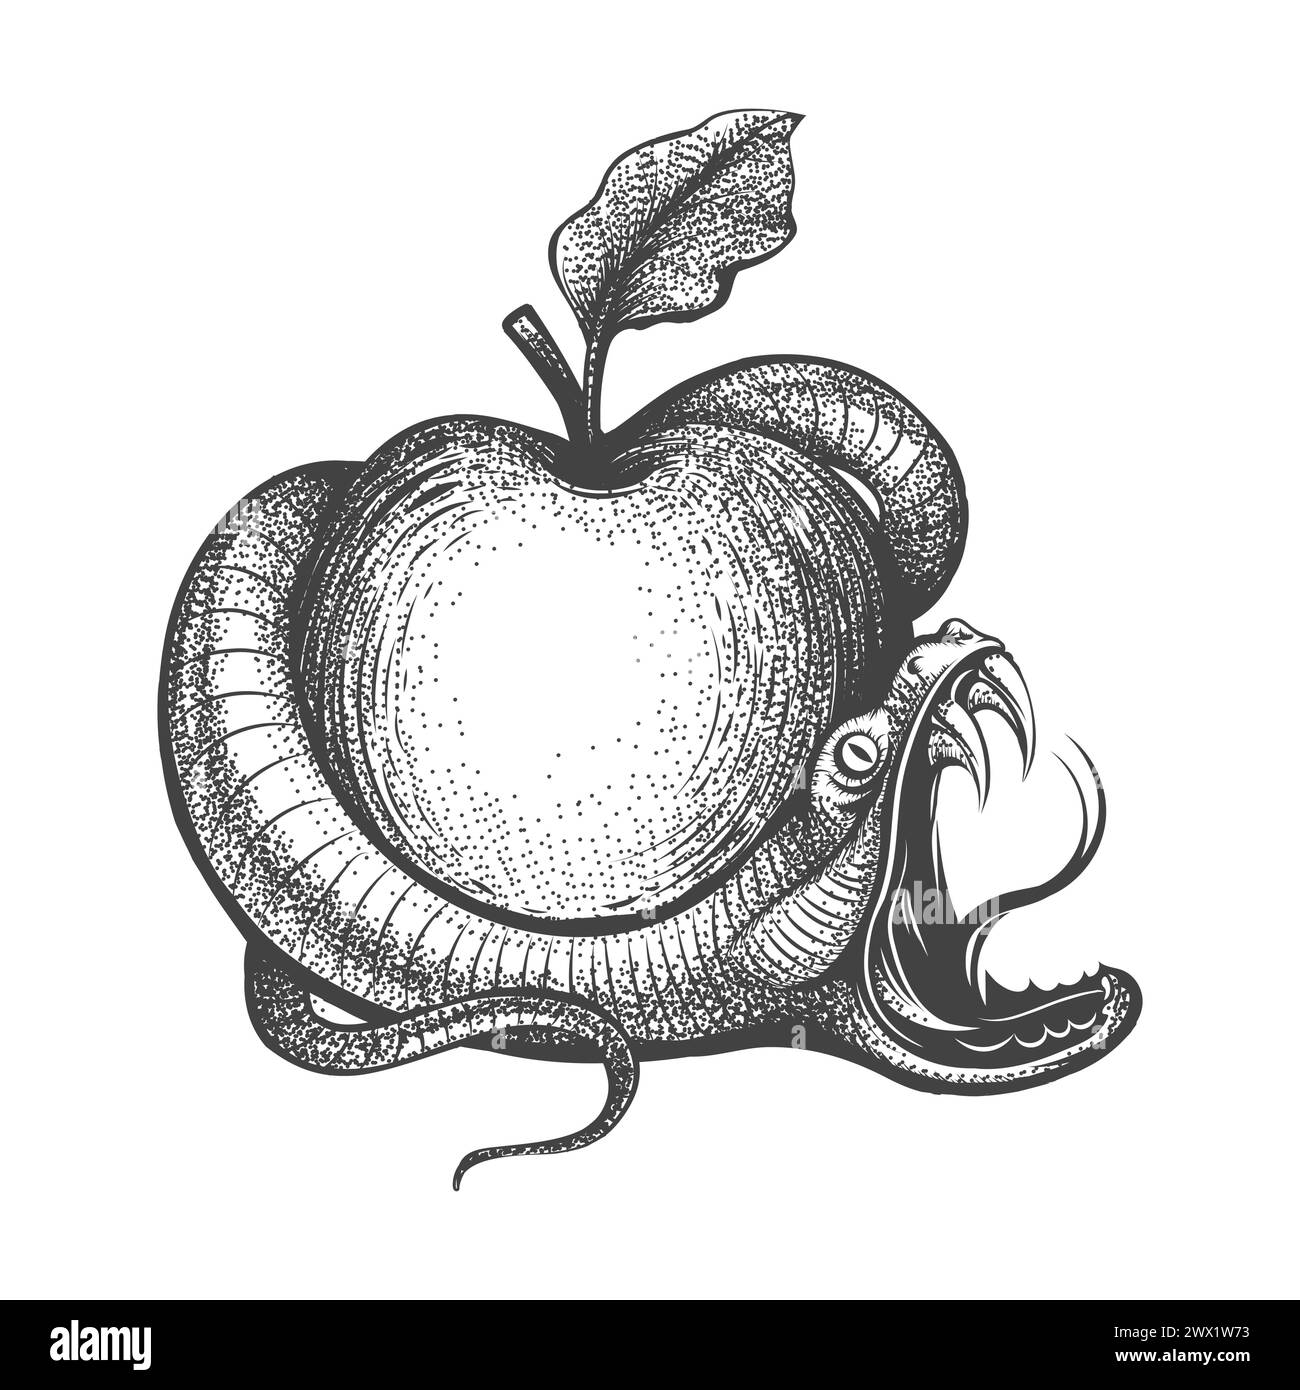 Snake Entwined Around Apple Engraving Tattoo isolato su sfondo bianco. Illustrazione vettoriale. Non è stata utilizzata alcuna IA. Illustrazione Vettoriale